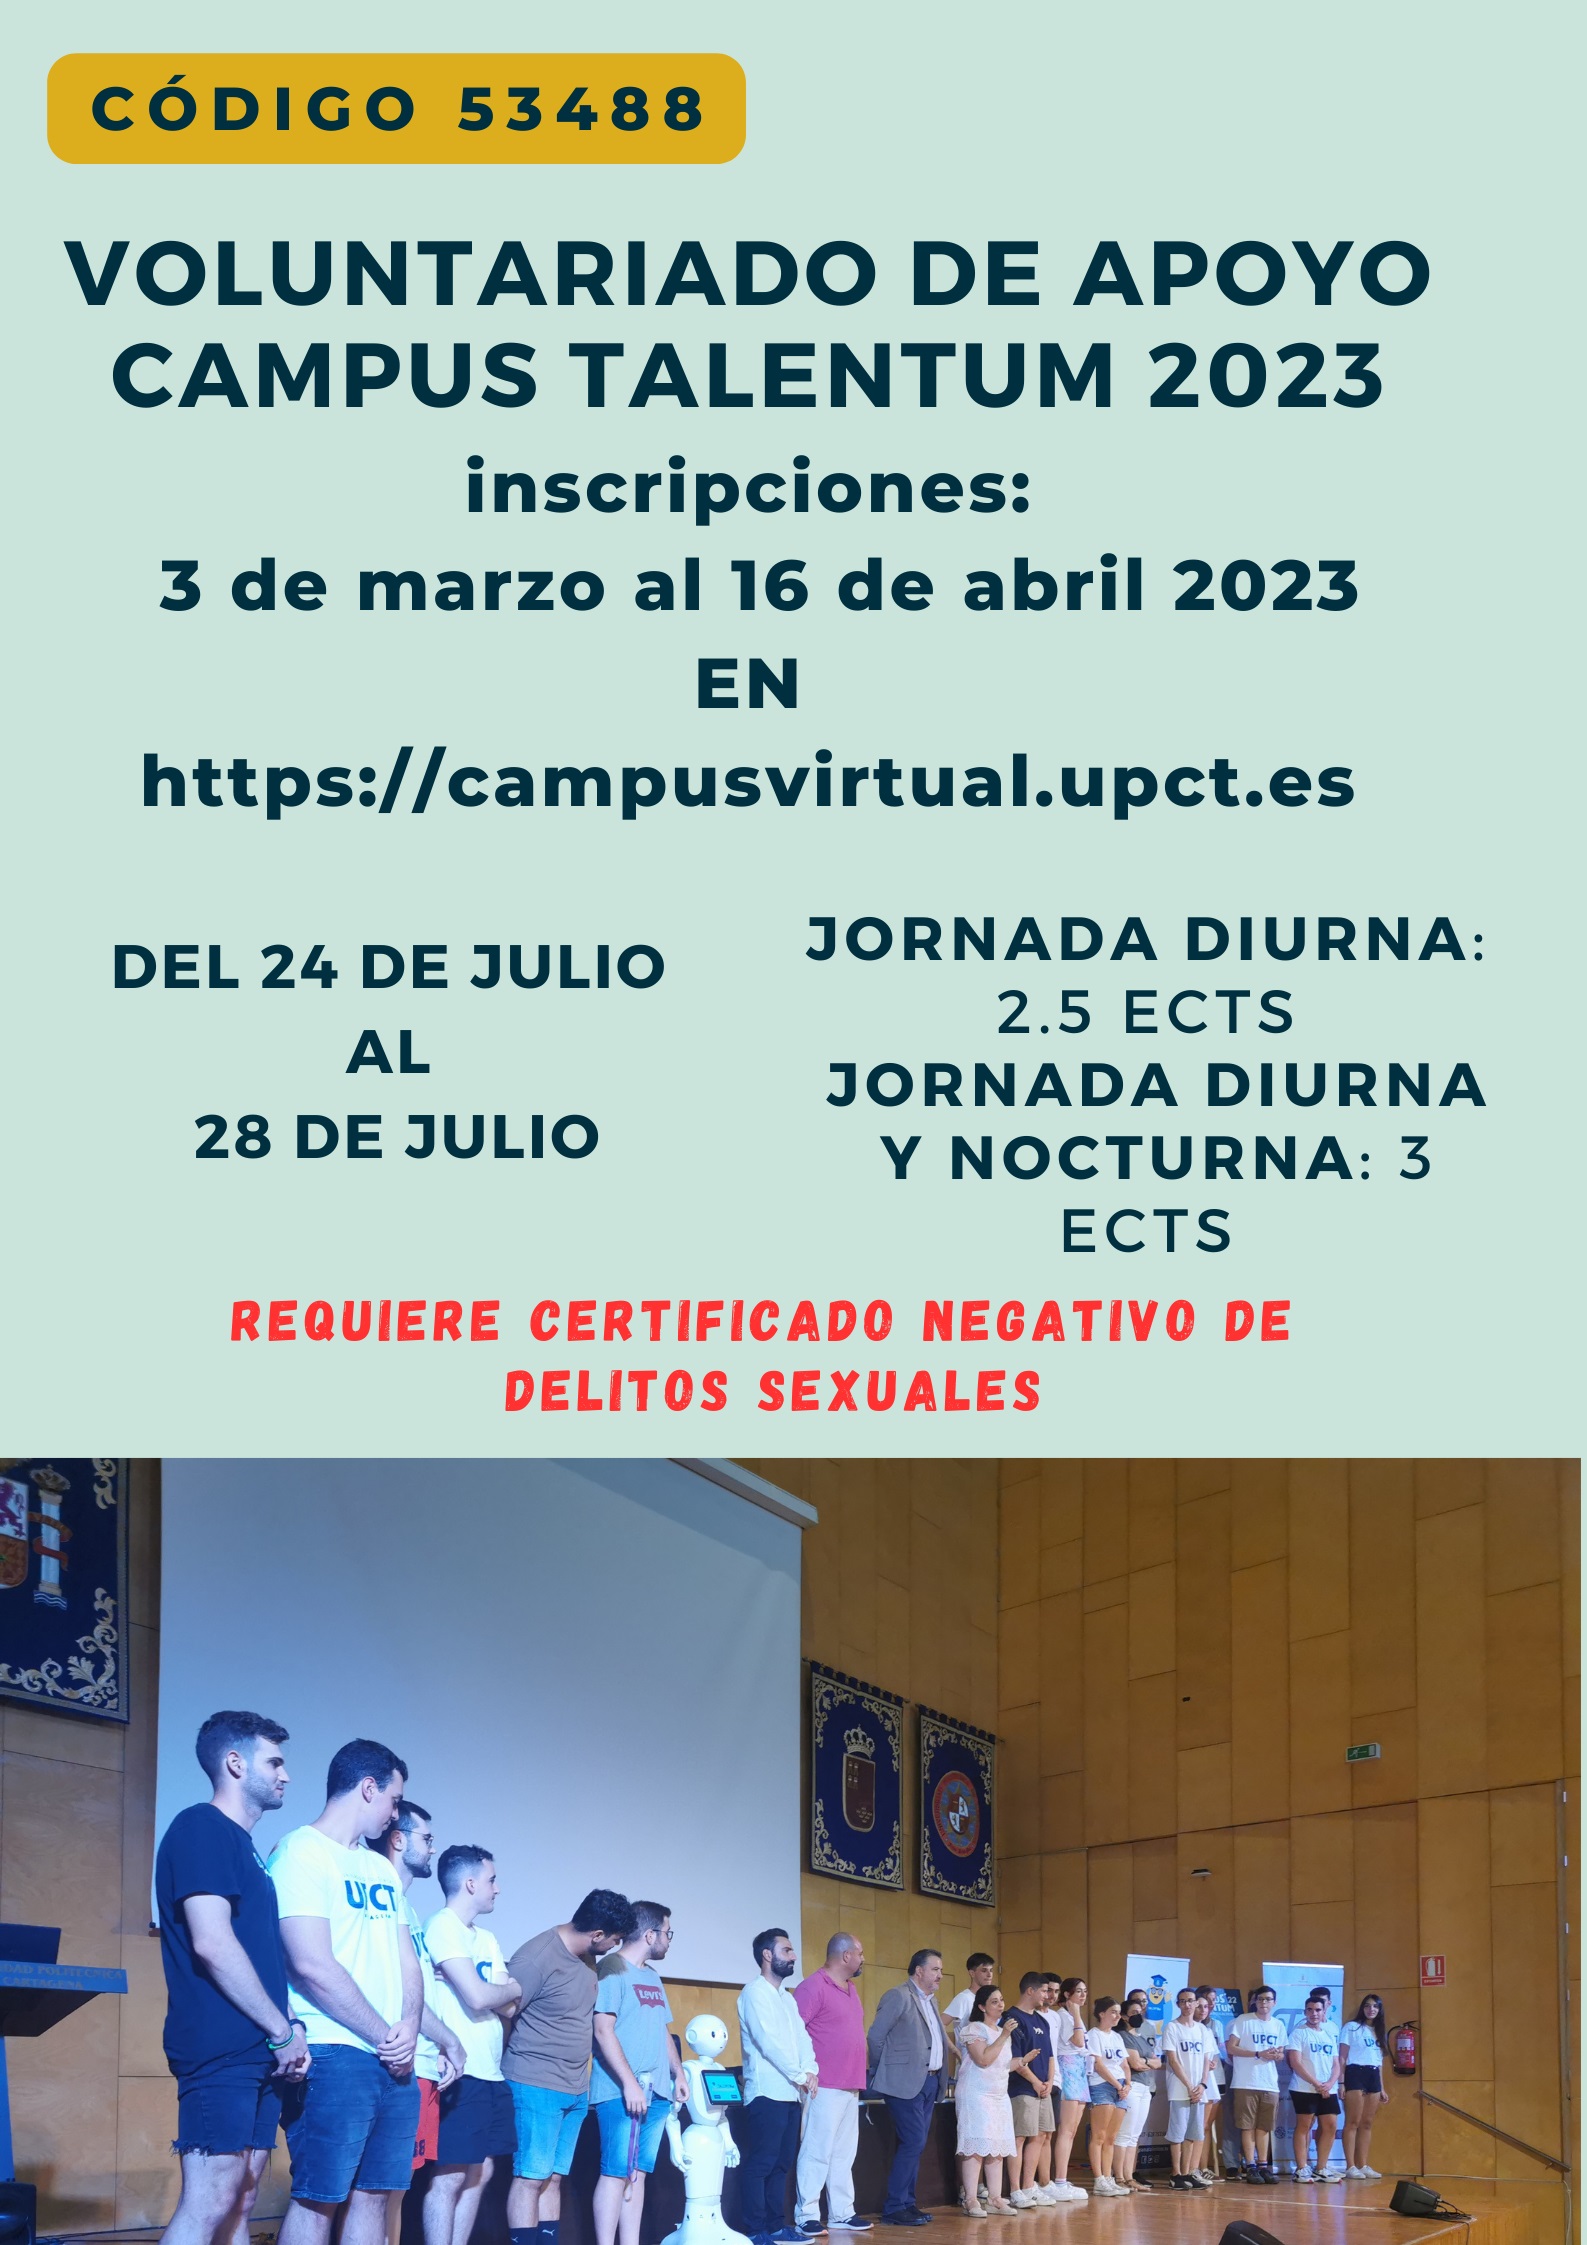 foto: Voluntariado de apoyo Campus Talentum 2023. 53488